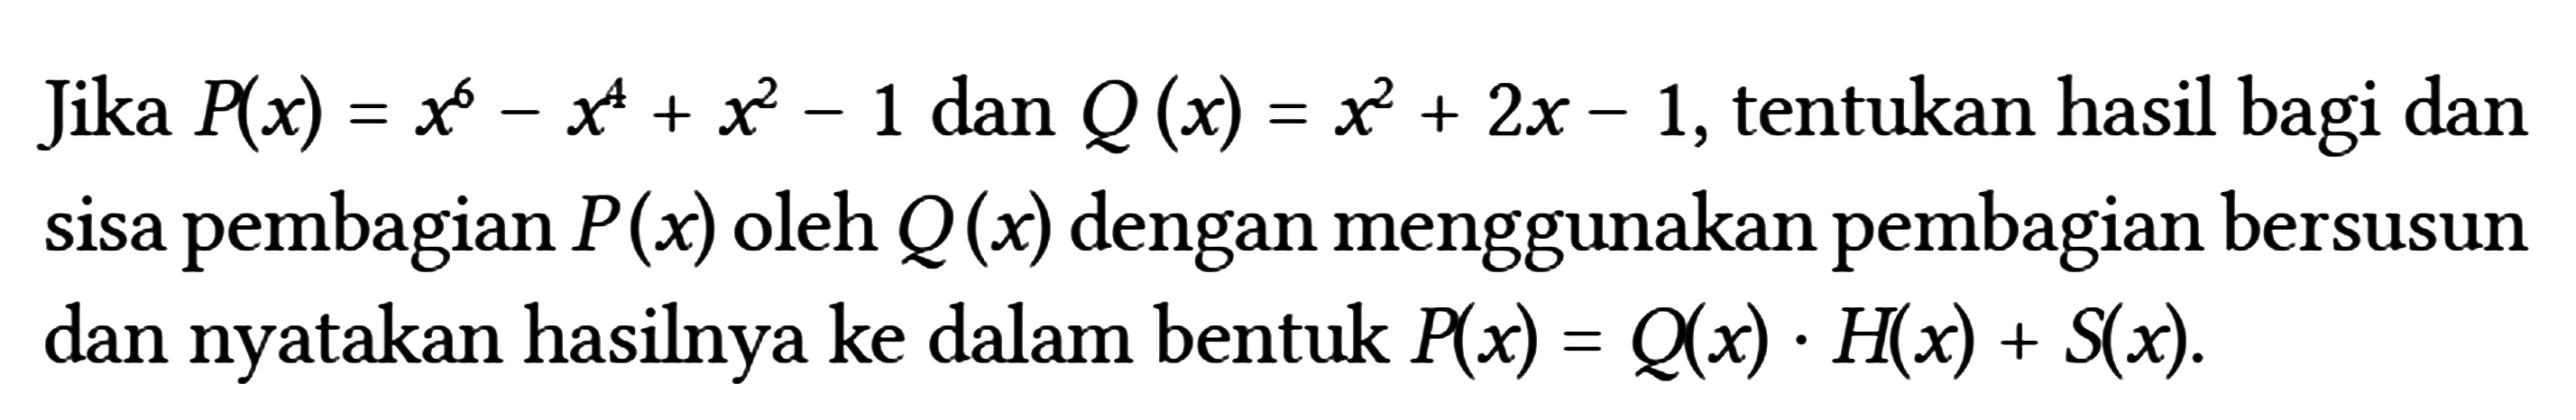 Jika P(x)=x^(6)-x^(4)+x^(2)-1 dan Q(x)=x^(2)+2 x-1 , tentukan hasil bagi dan sisa pembagian P(x) oleh Q(x) dengan menggunakan pembagian bersusun dan nyatakan hasilnya ke dalam bentuk P(x)=Q(x) . H(x)+S(x) .